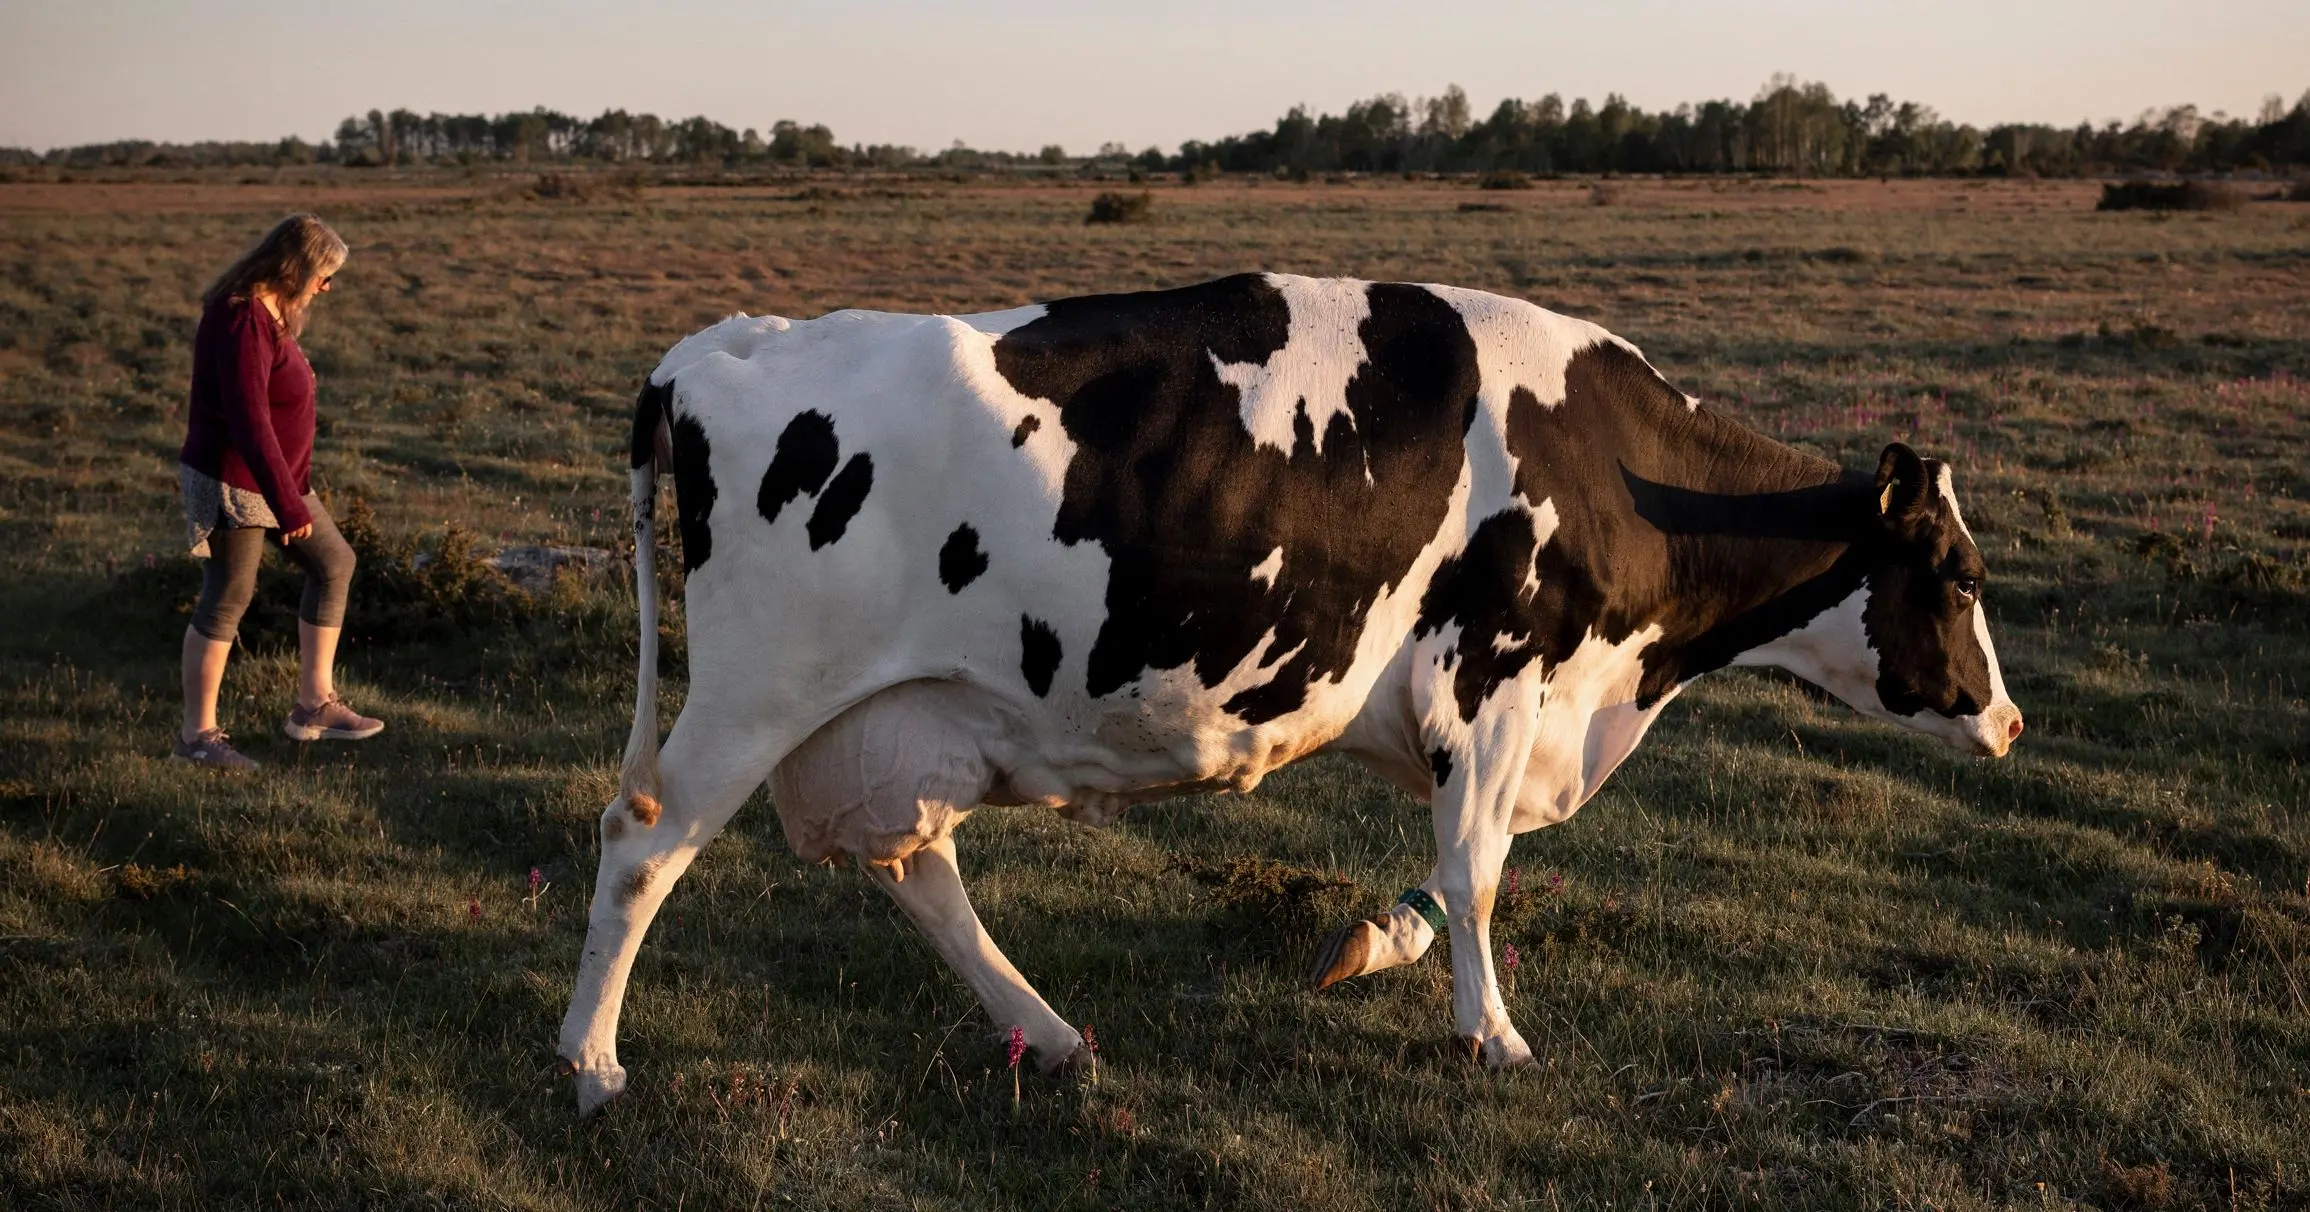 På bilden ser vi en mjölkbonde som promenerar tillsammans med en av sina kor på ett fält.